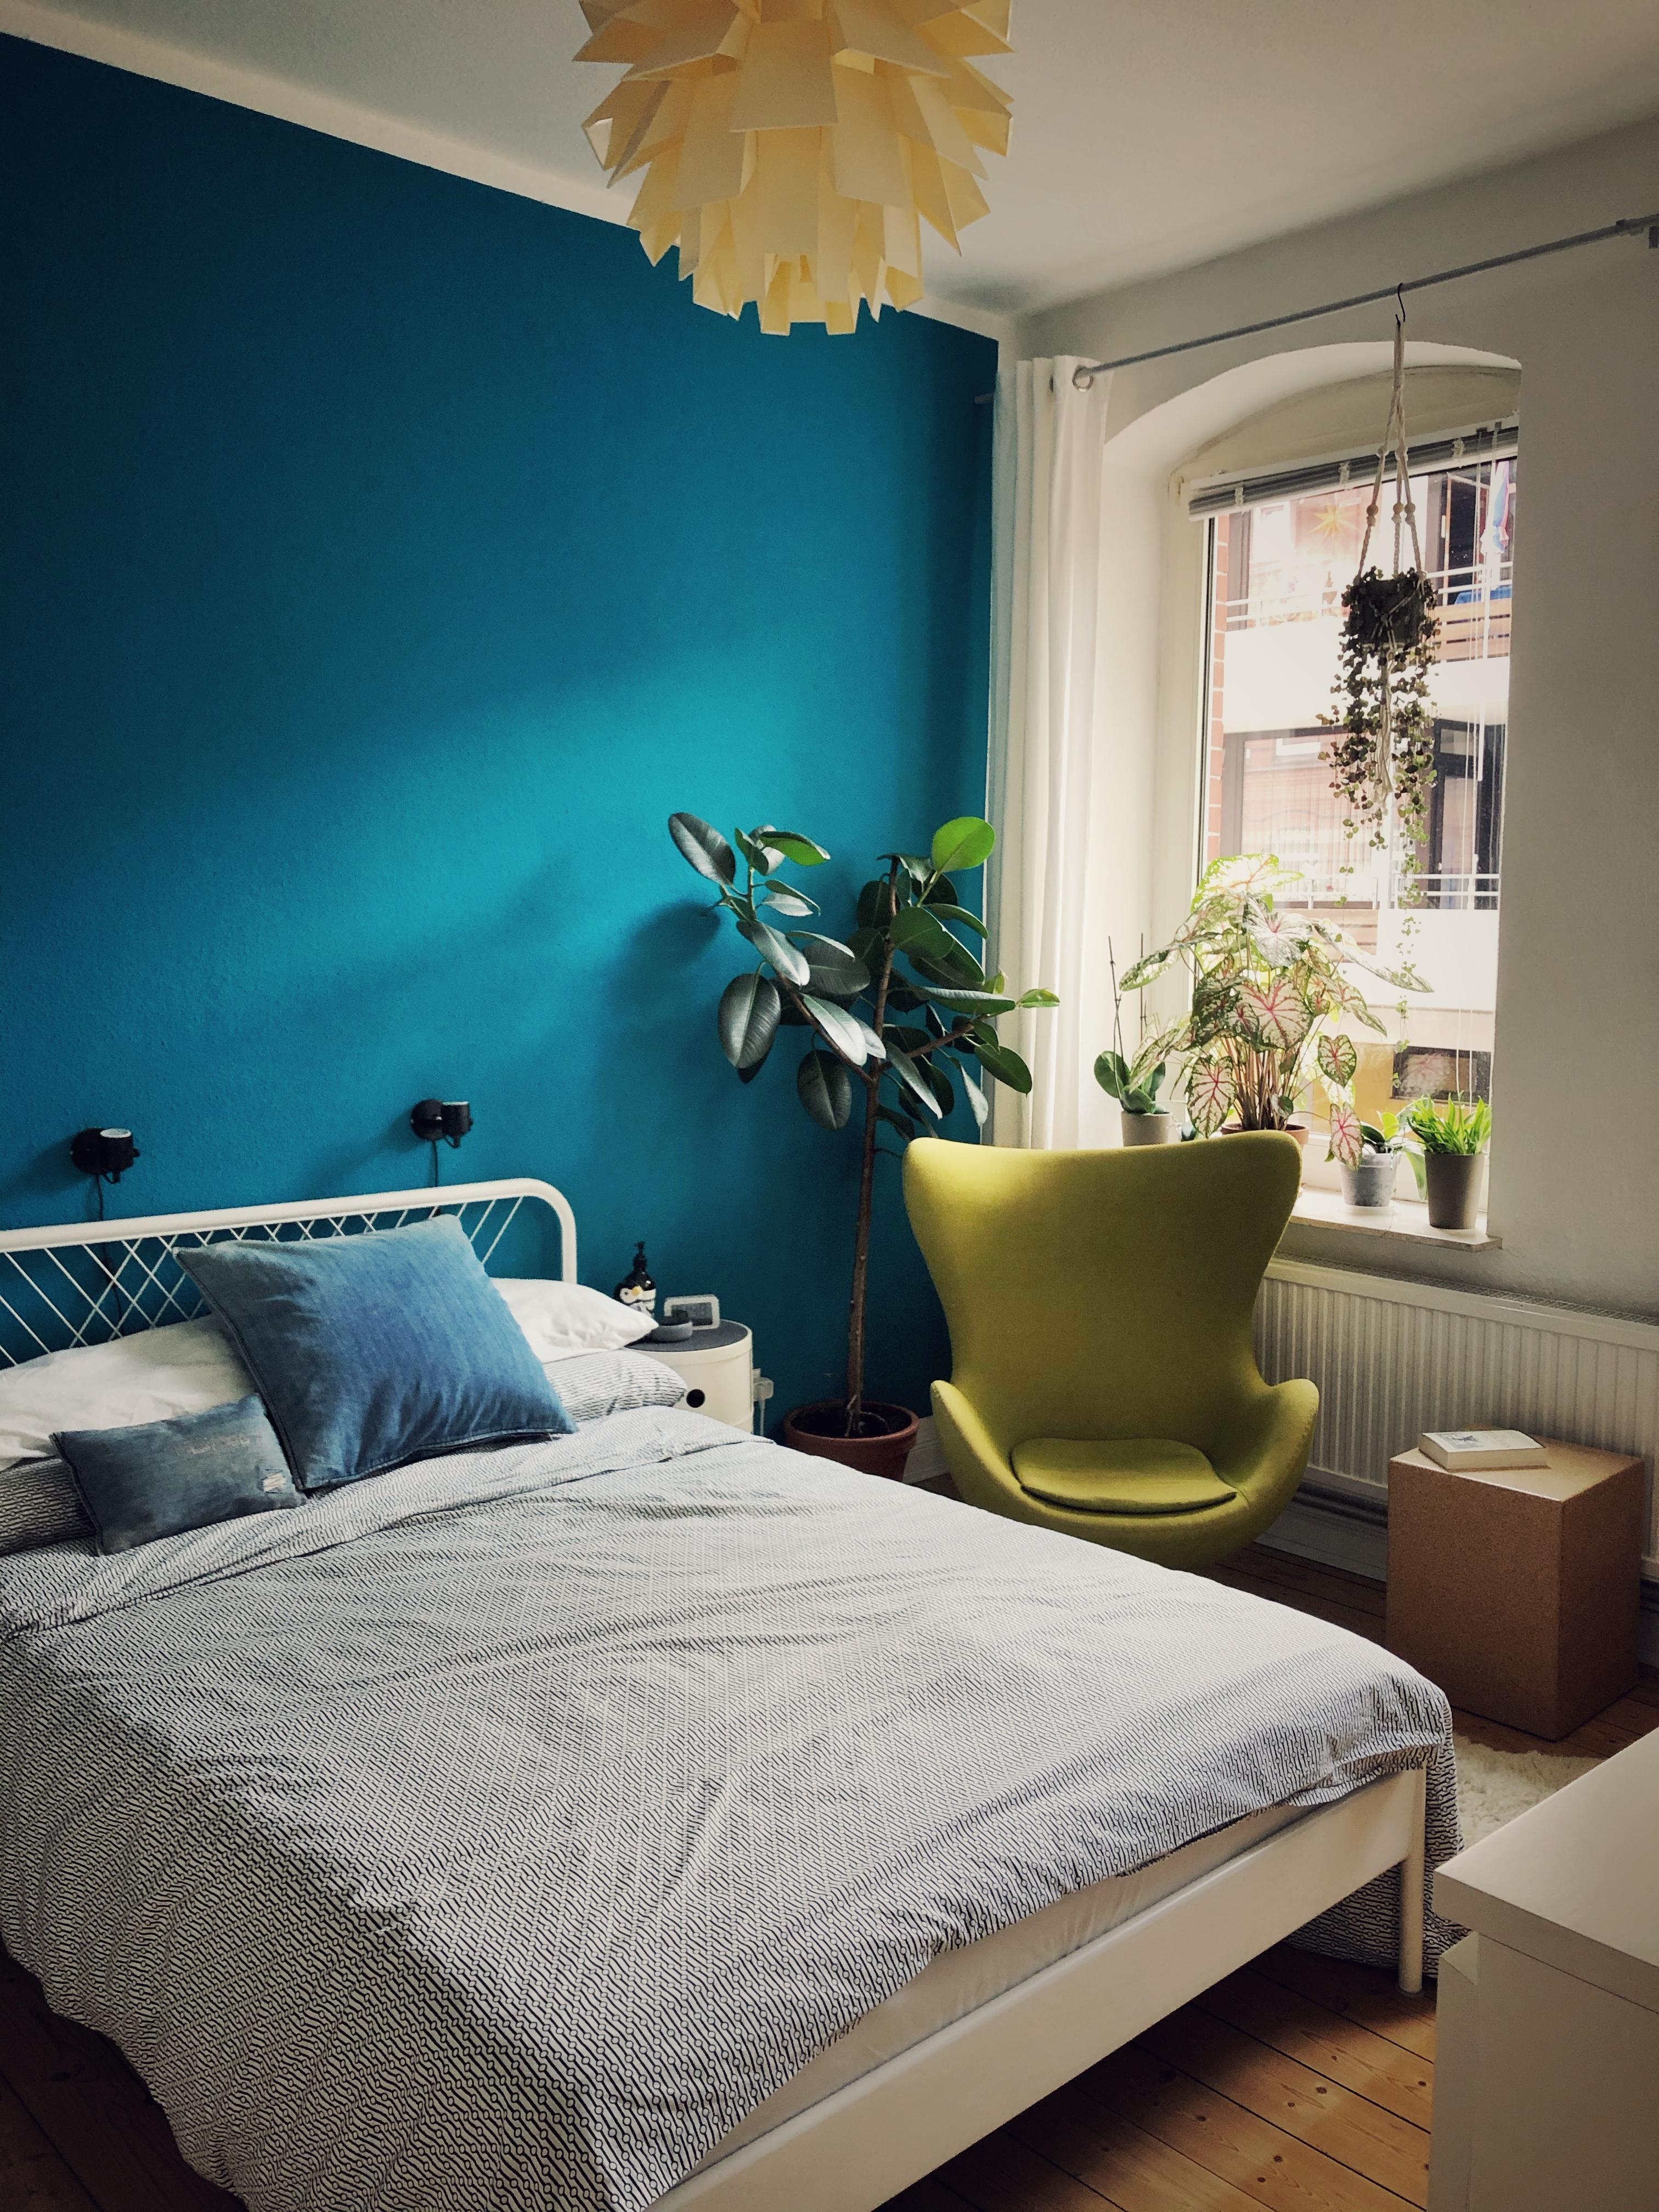 Ich mag die Farbkombinationen aus Oliv und Petrol #traeumsuess #couchstyle #vintage #homesweethome #plantlove